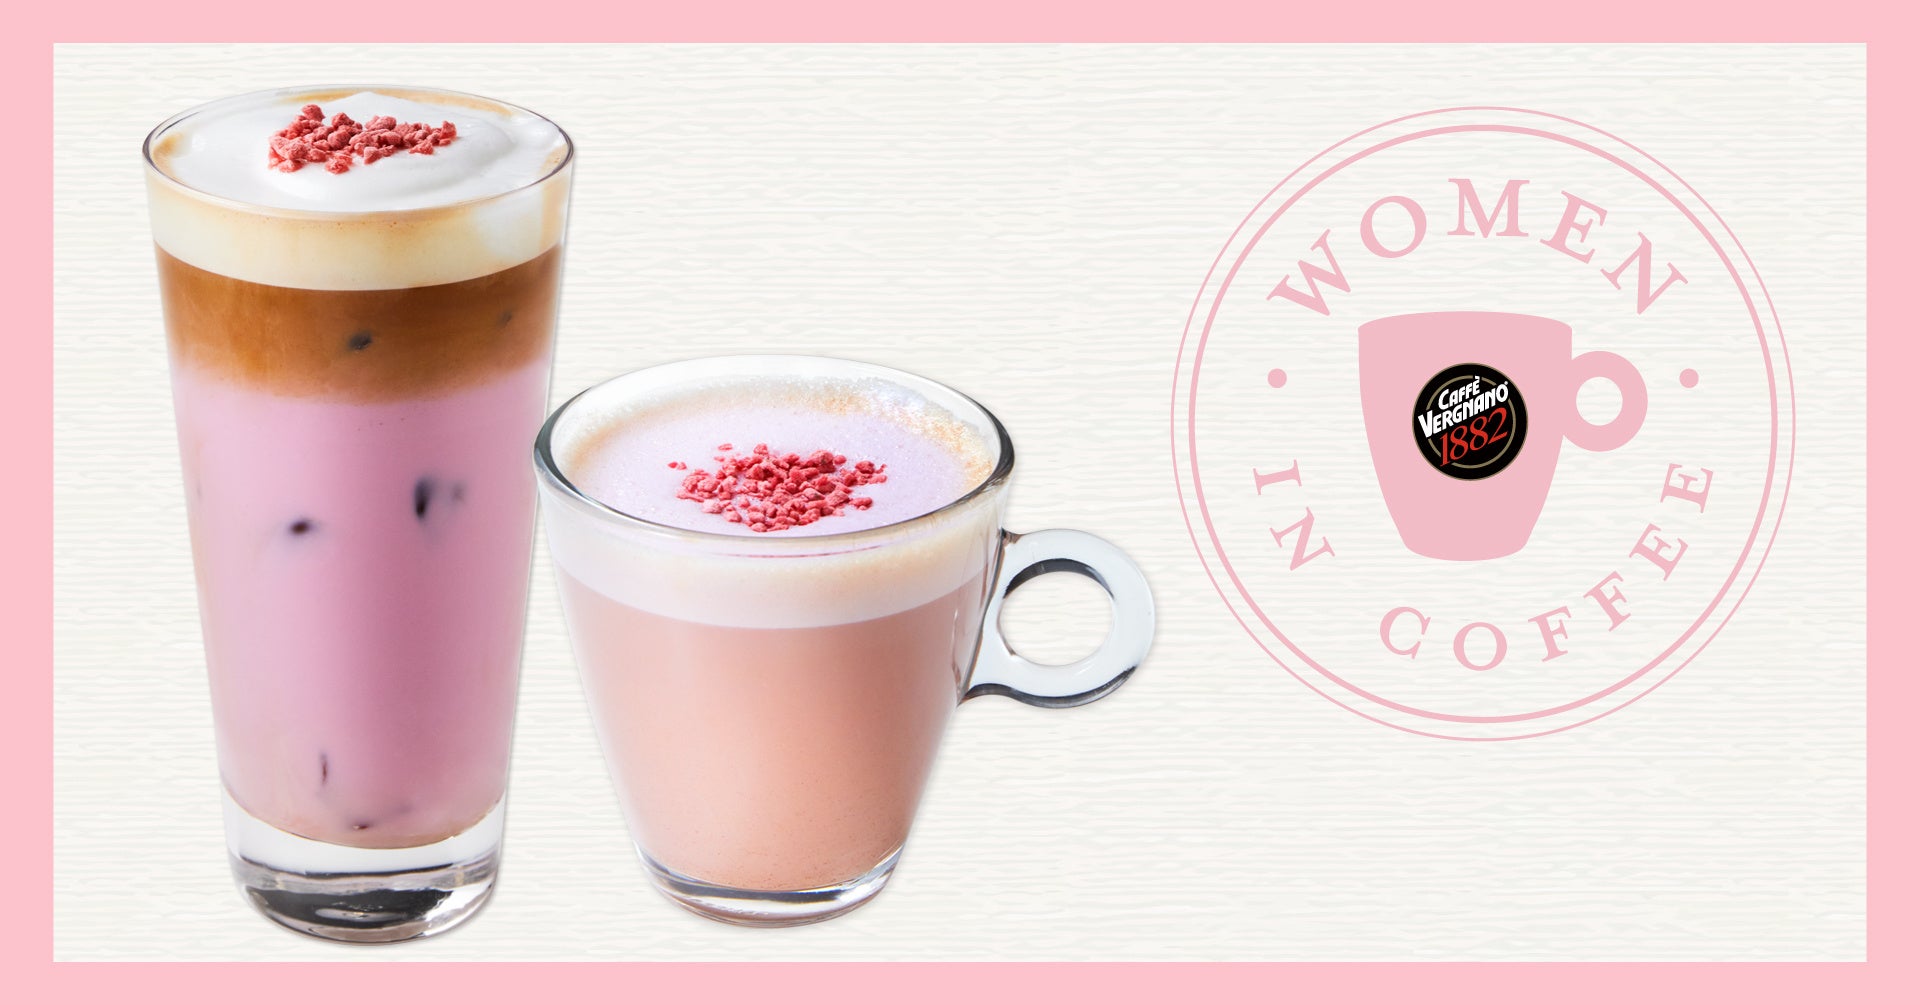 池袋西口公園内のカフェにてピンク色の「カプチーノ」が登場！「Women in Coffee」のコーヒー豆を使用した『ピンクカプチーノ』新発売！